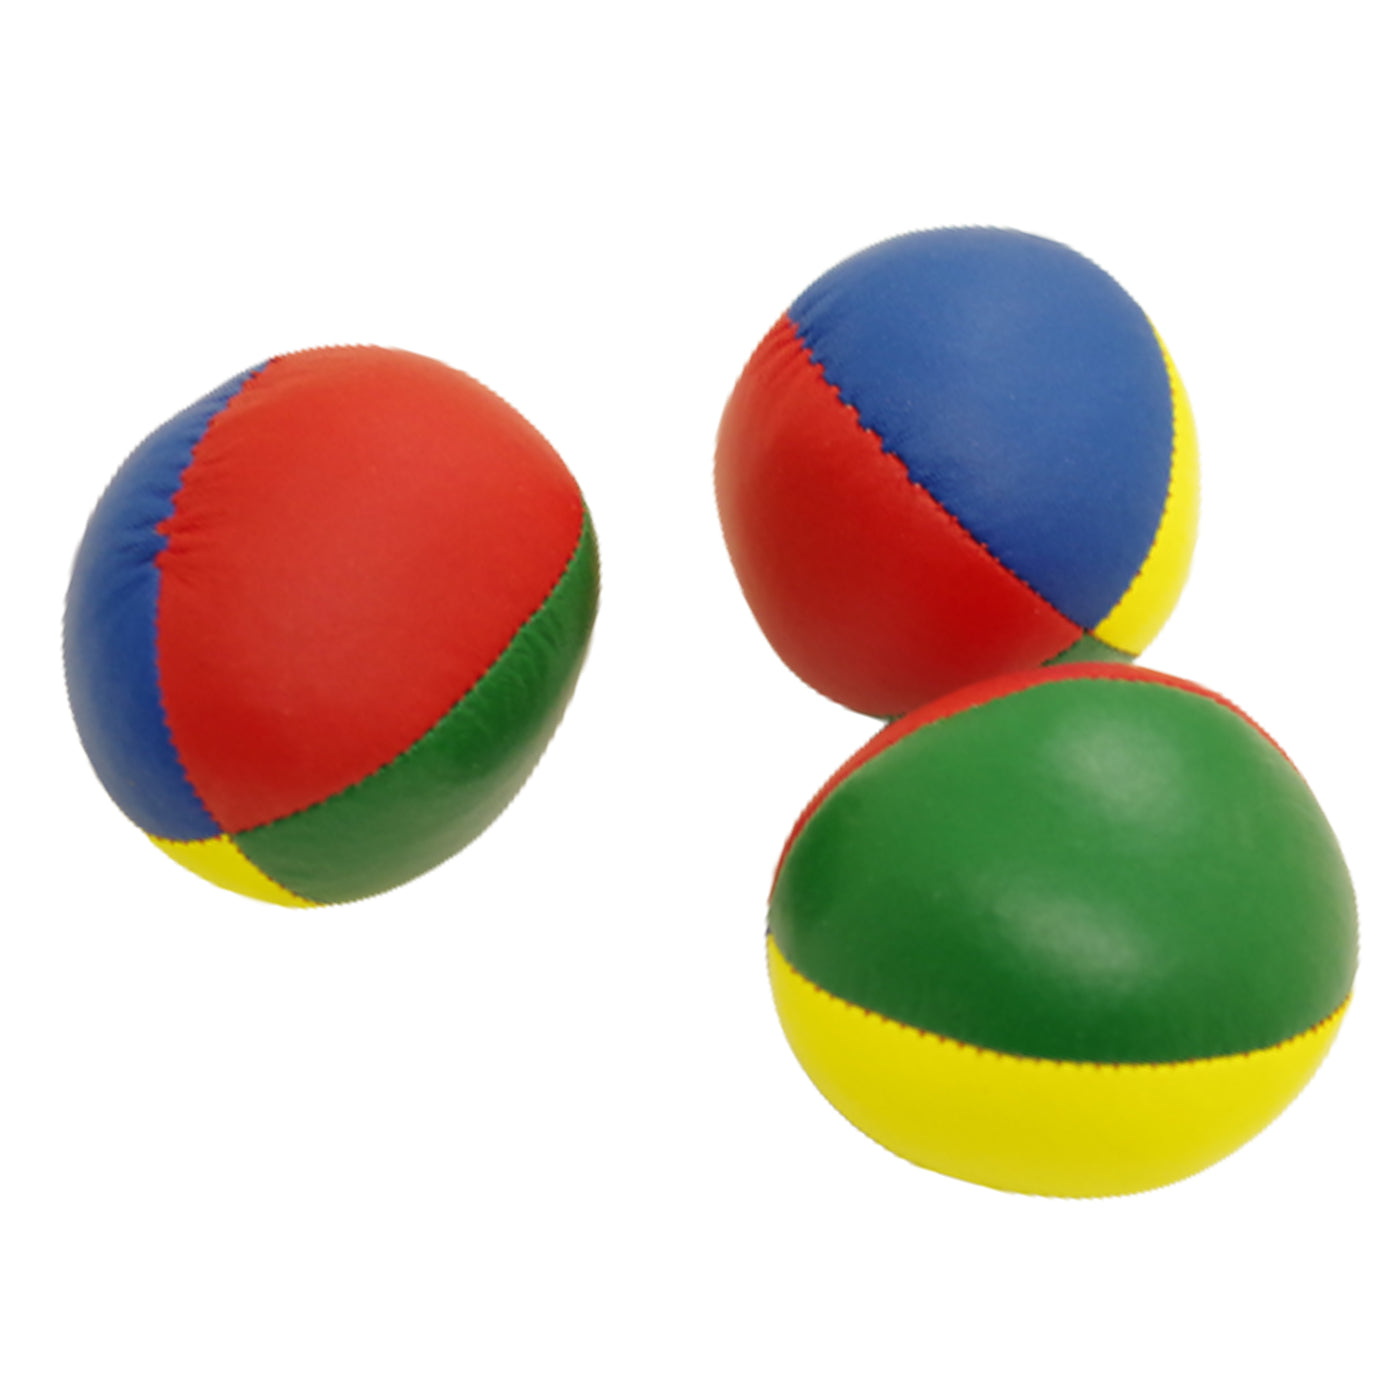 Balles de jonglage Junior cousues de qualité / Lot de 3 + Sac de rangement